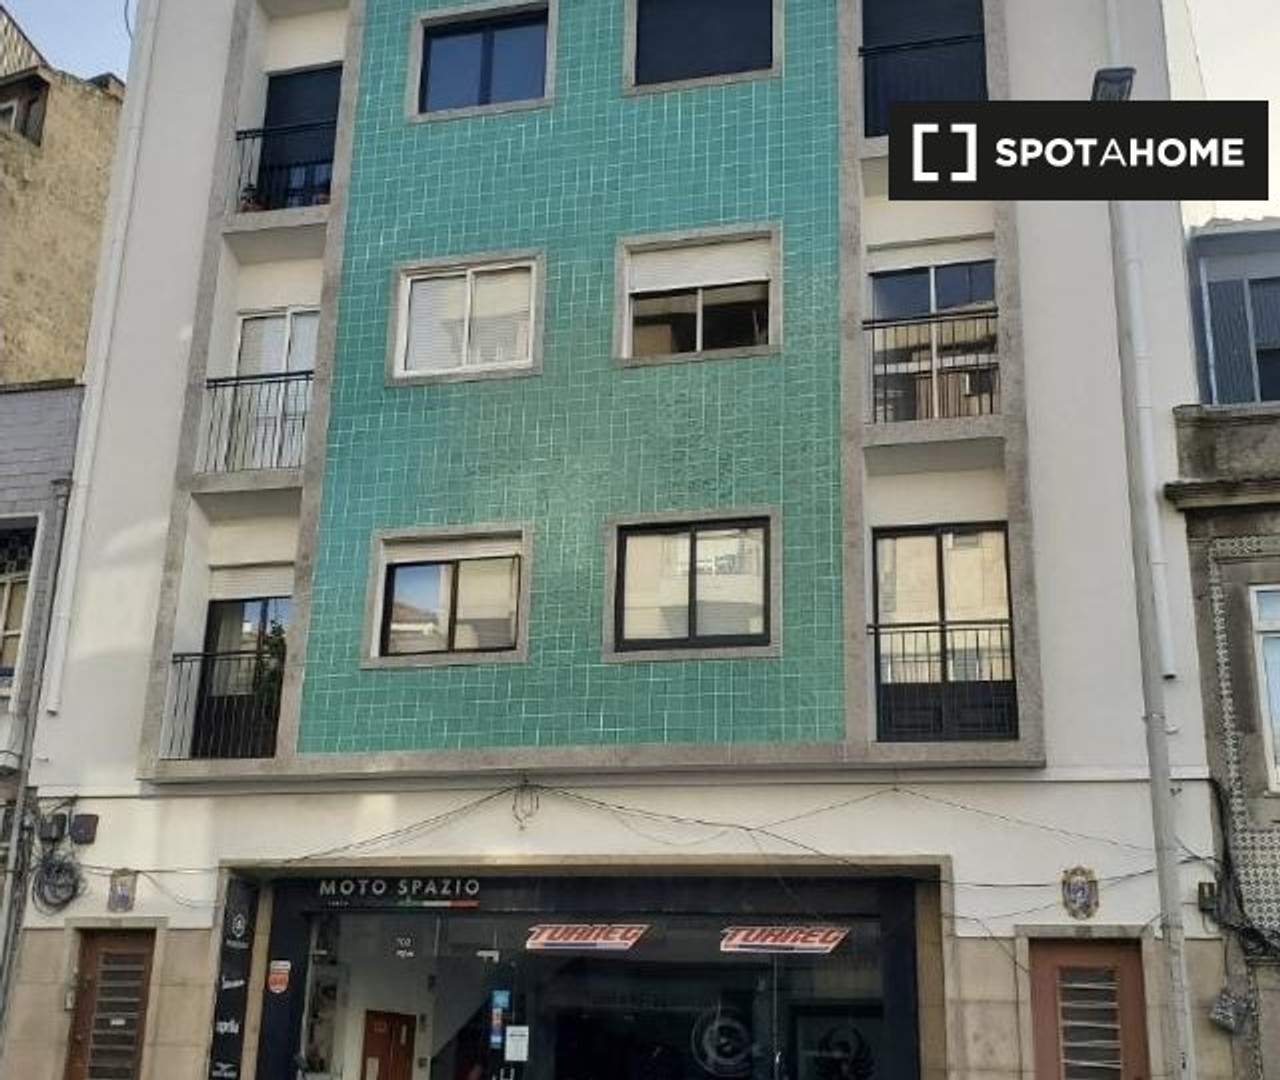 Appartement moderne et lumineux à Porto